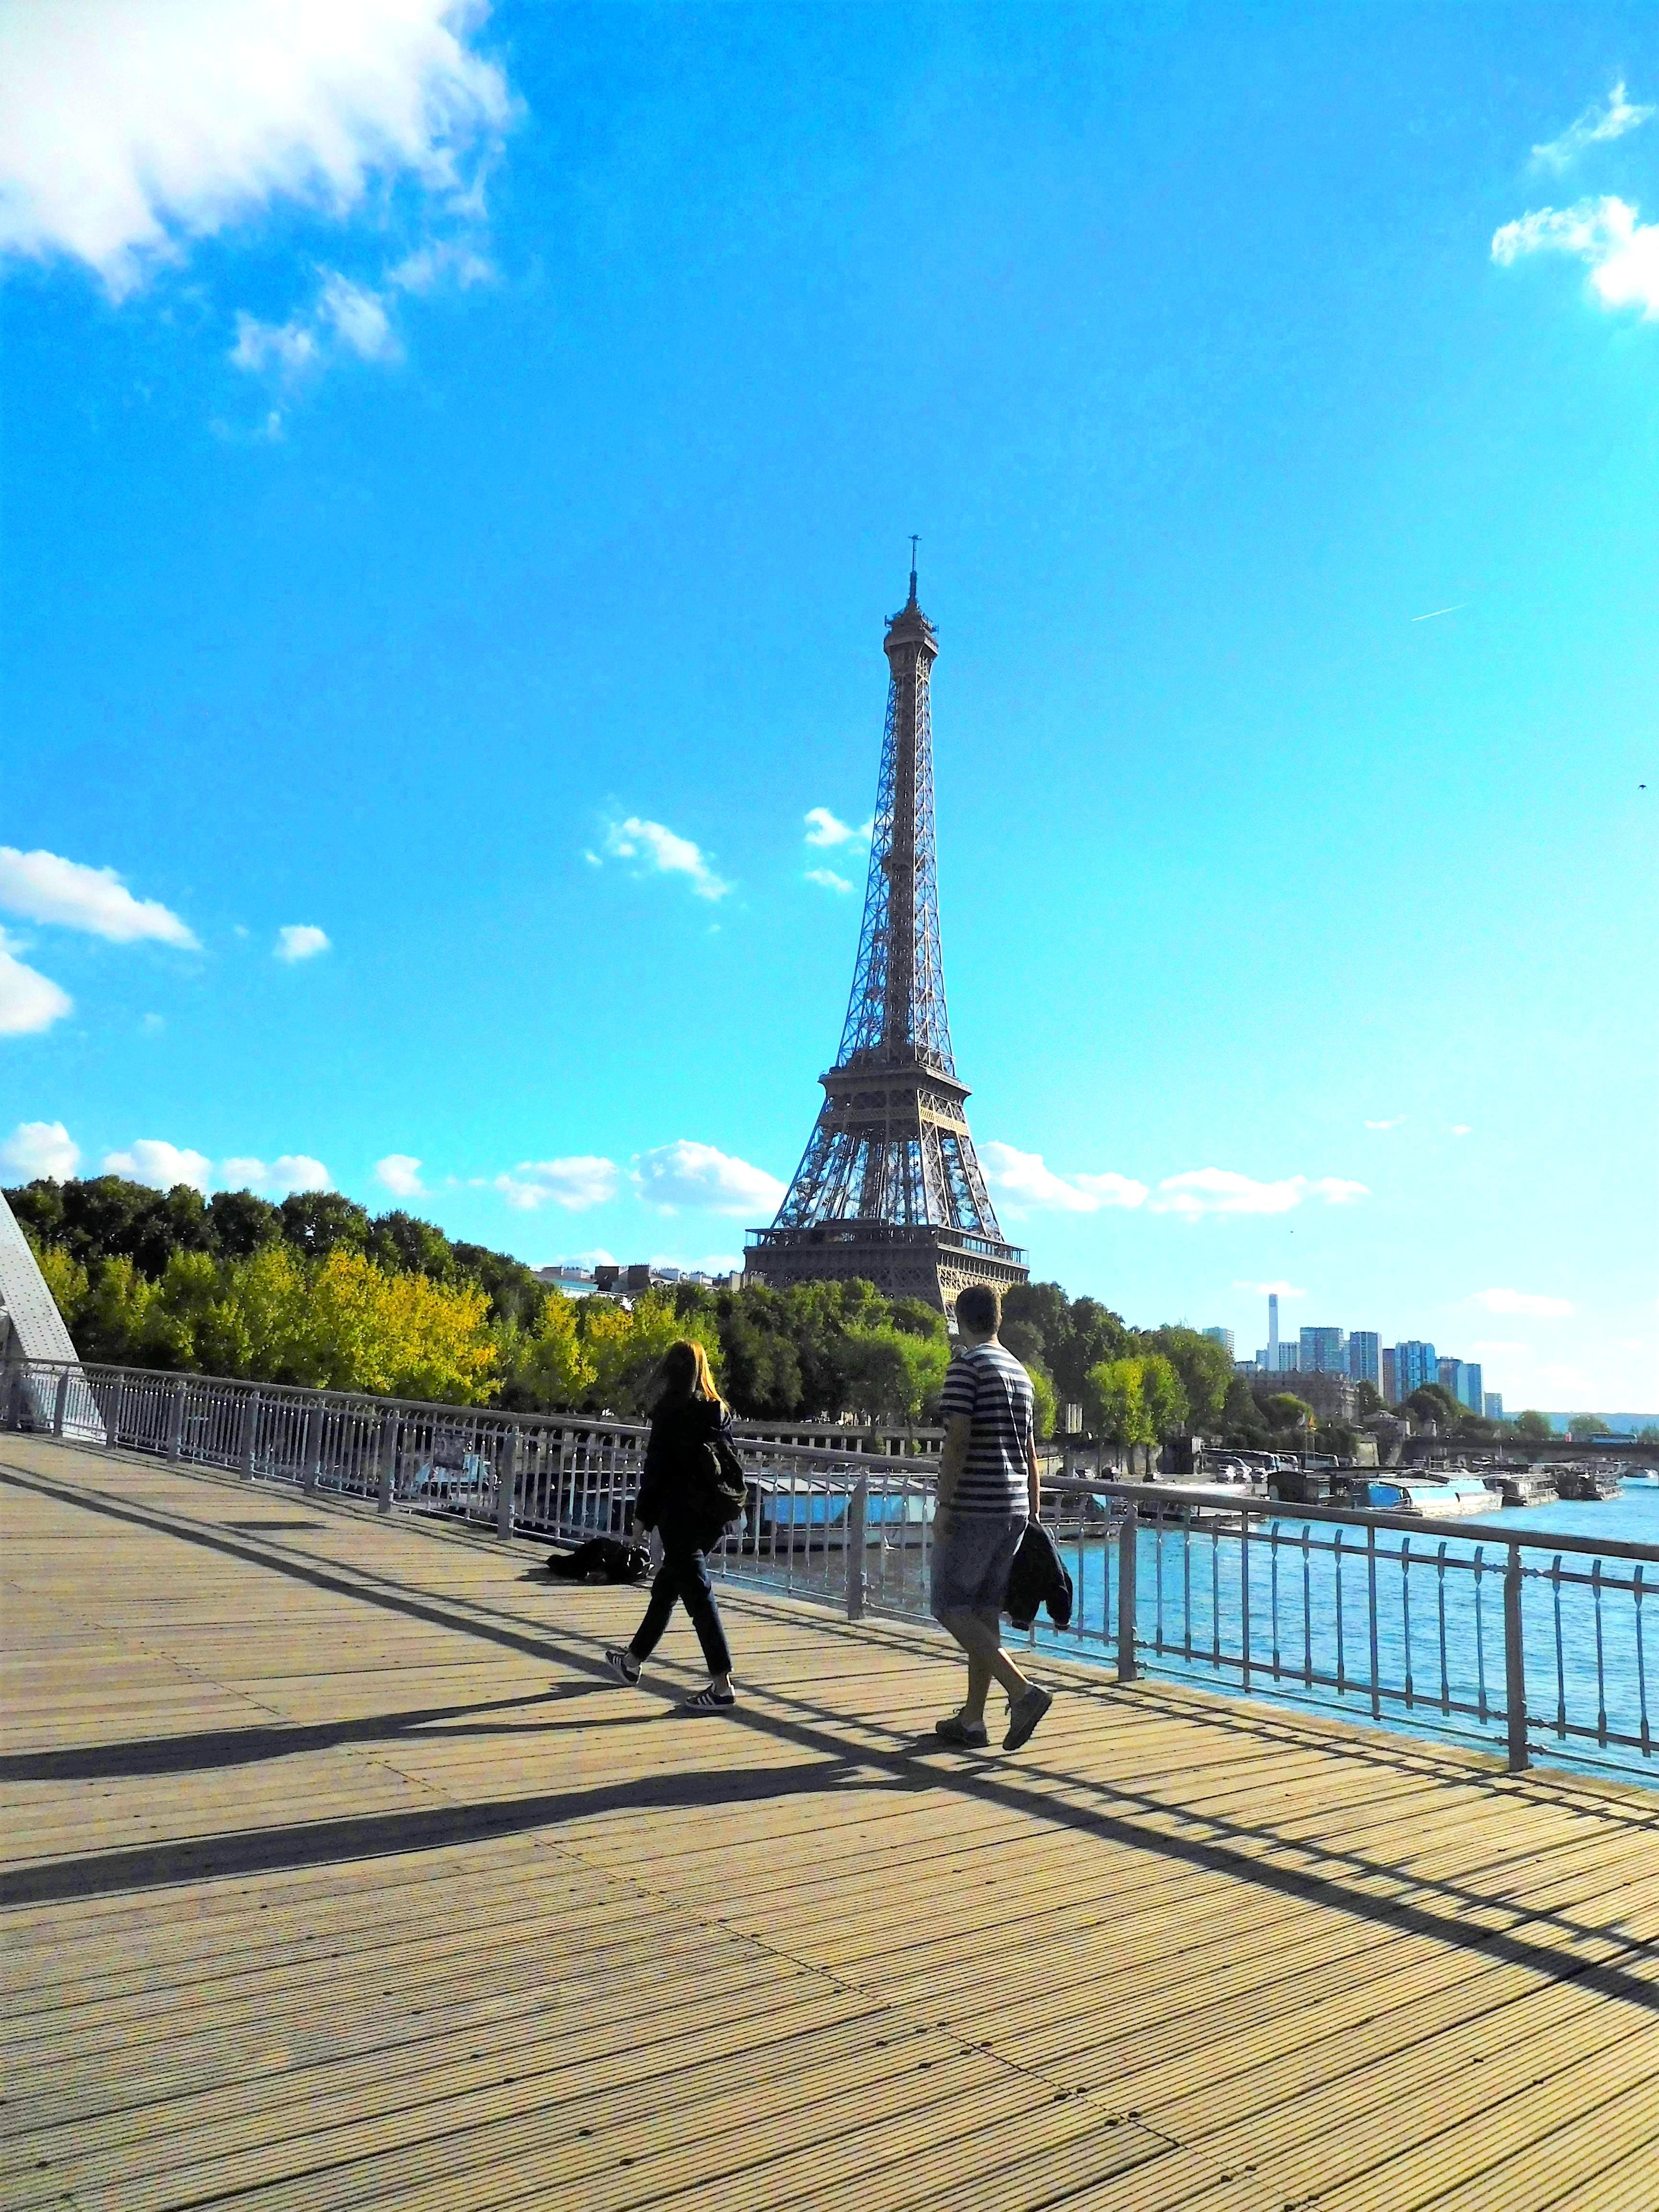 Eine 2-wöchige Rundreise durch Frankreich war #meinschönsterurlaub #travelchallenge 
Paris zu Fuß erkunden!